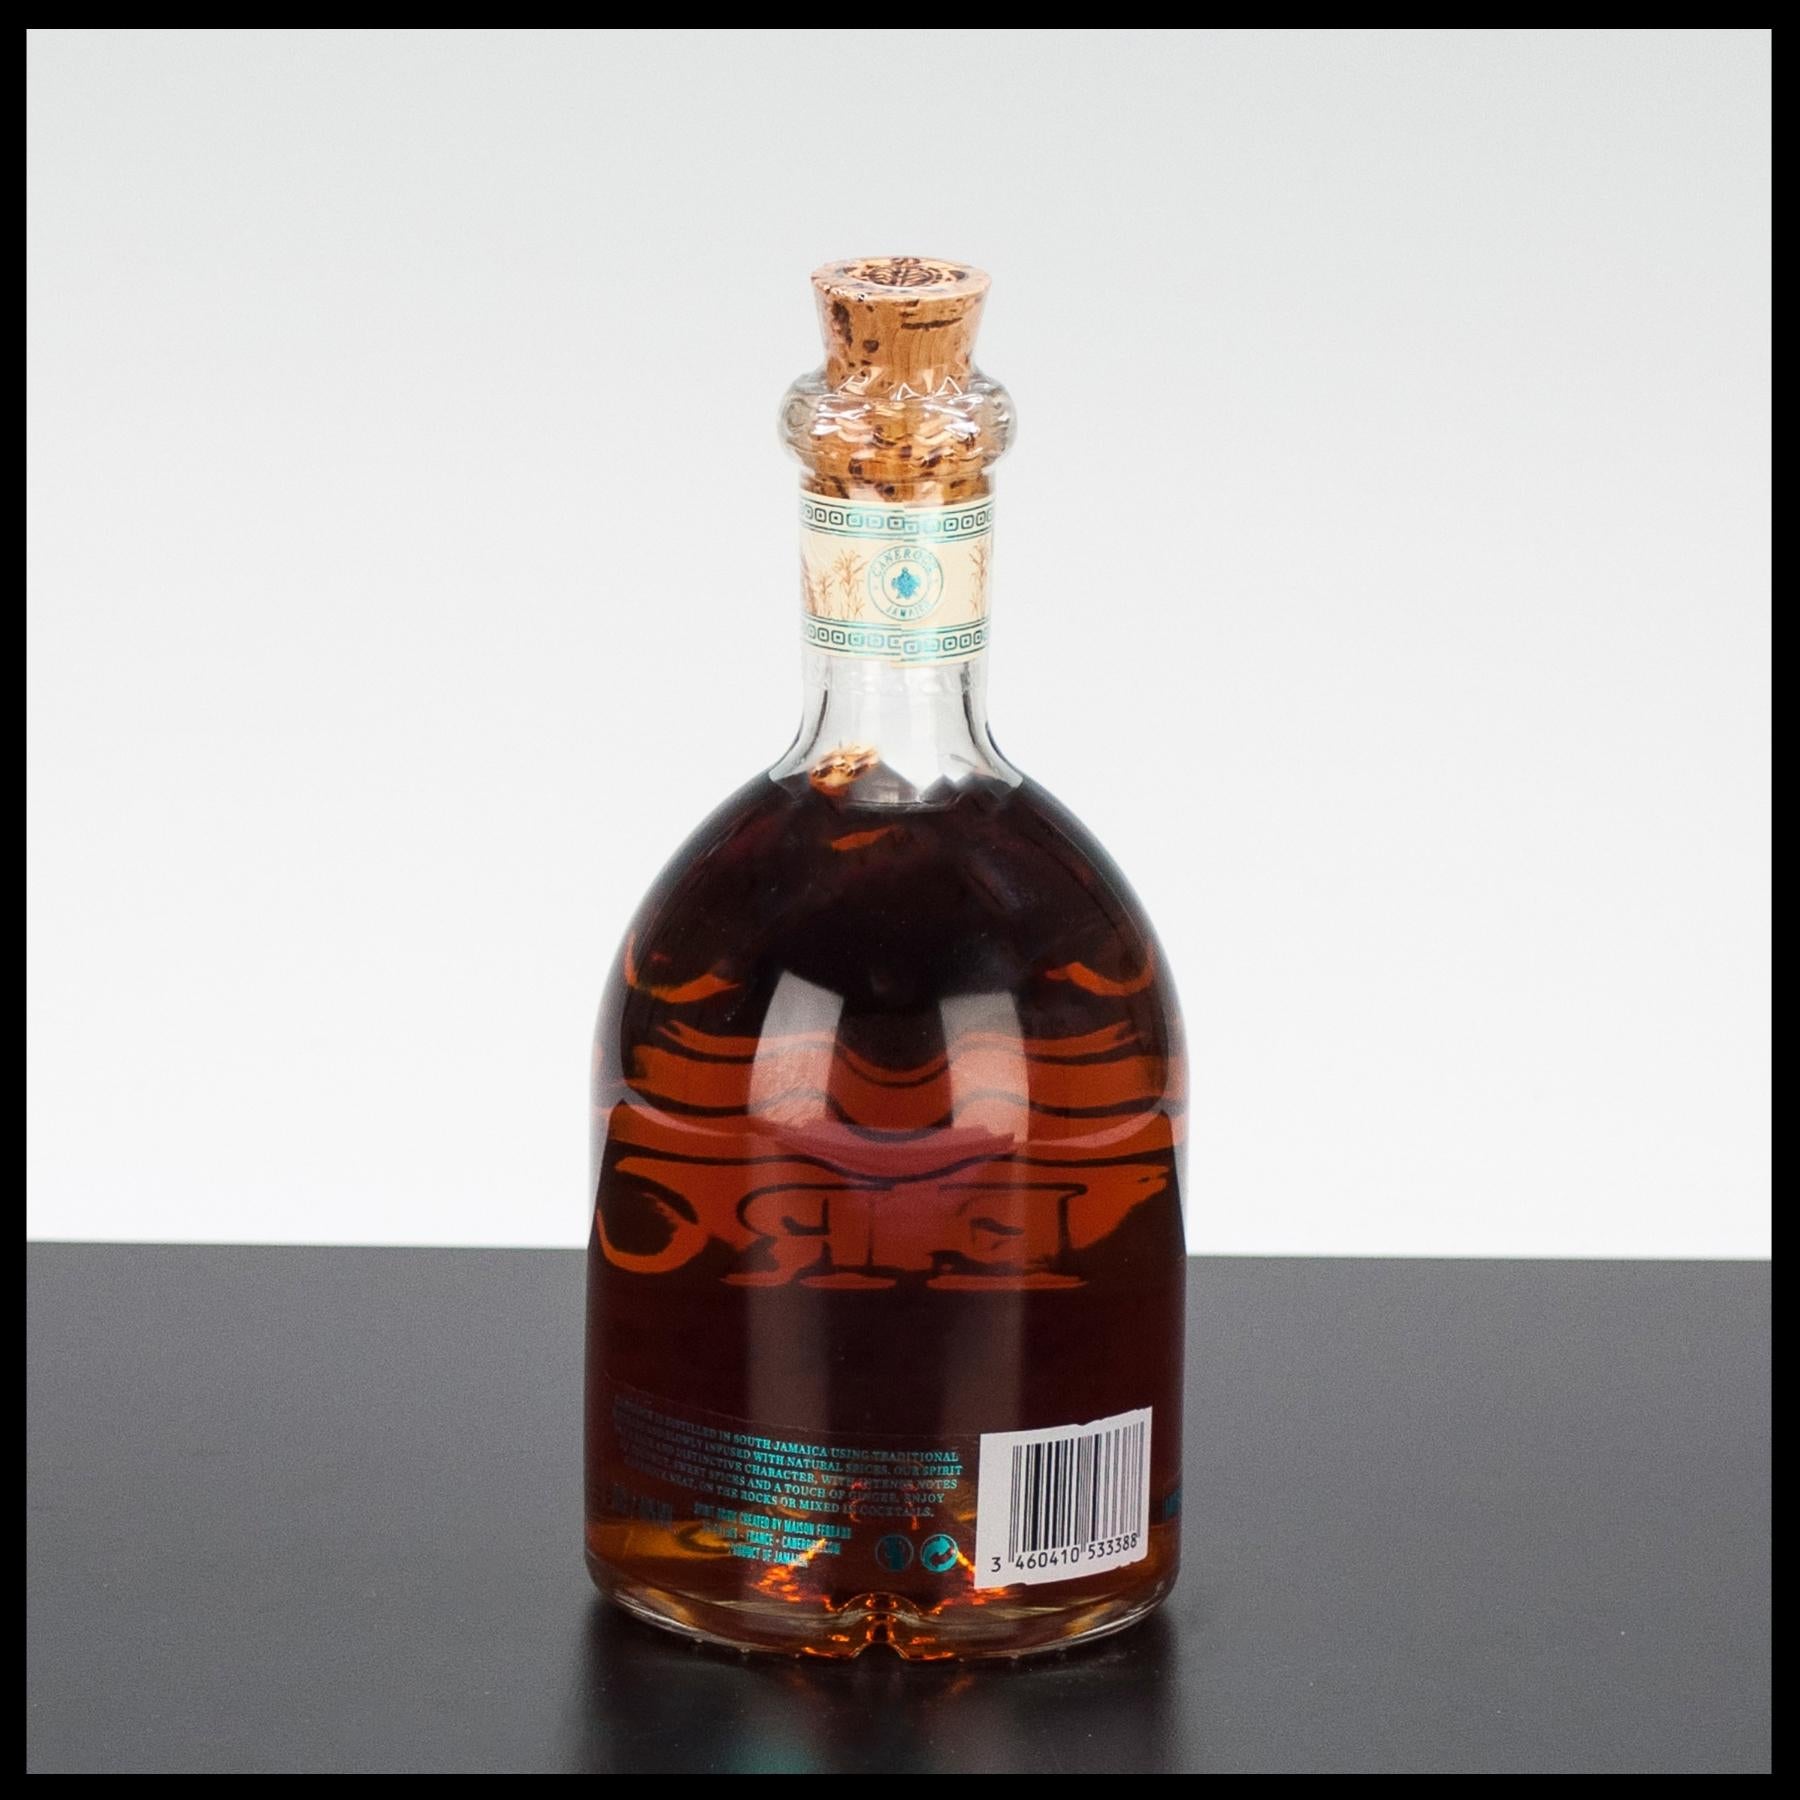 Canerock Spiced Rum 0,7L - 40% Vol. - Trinklusiv